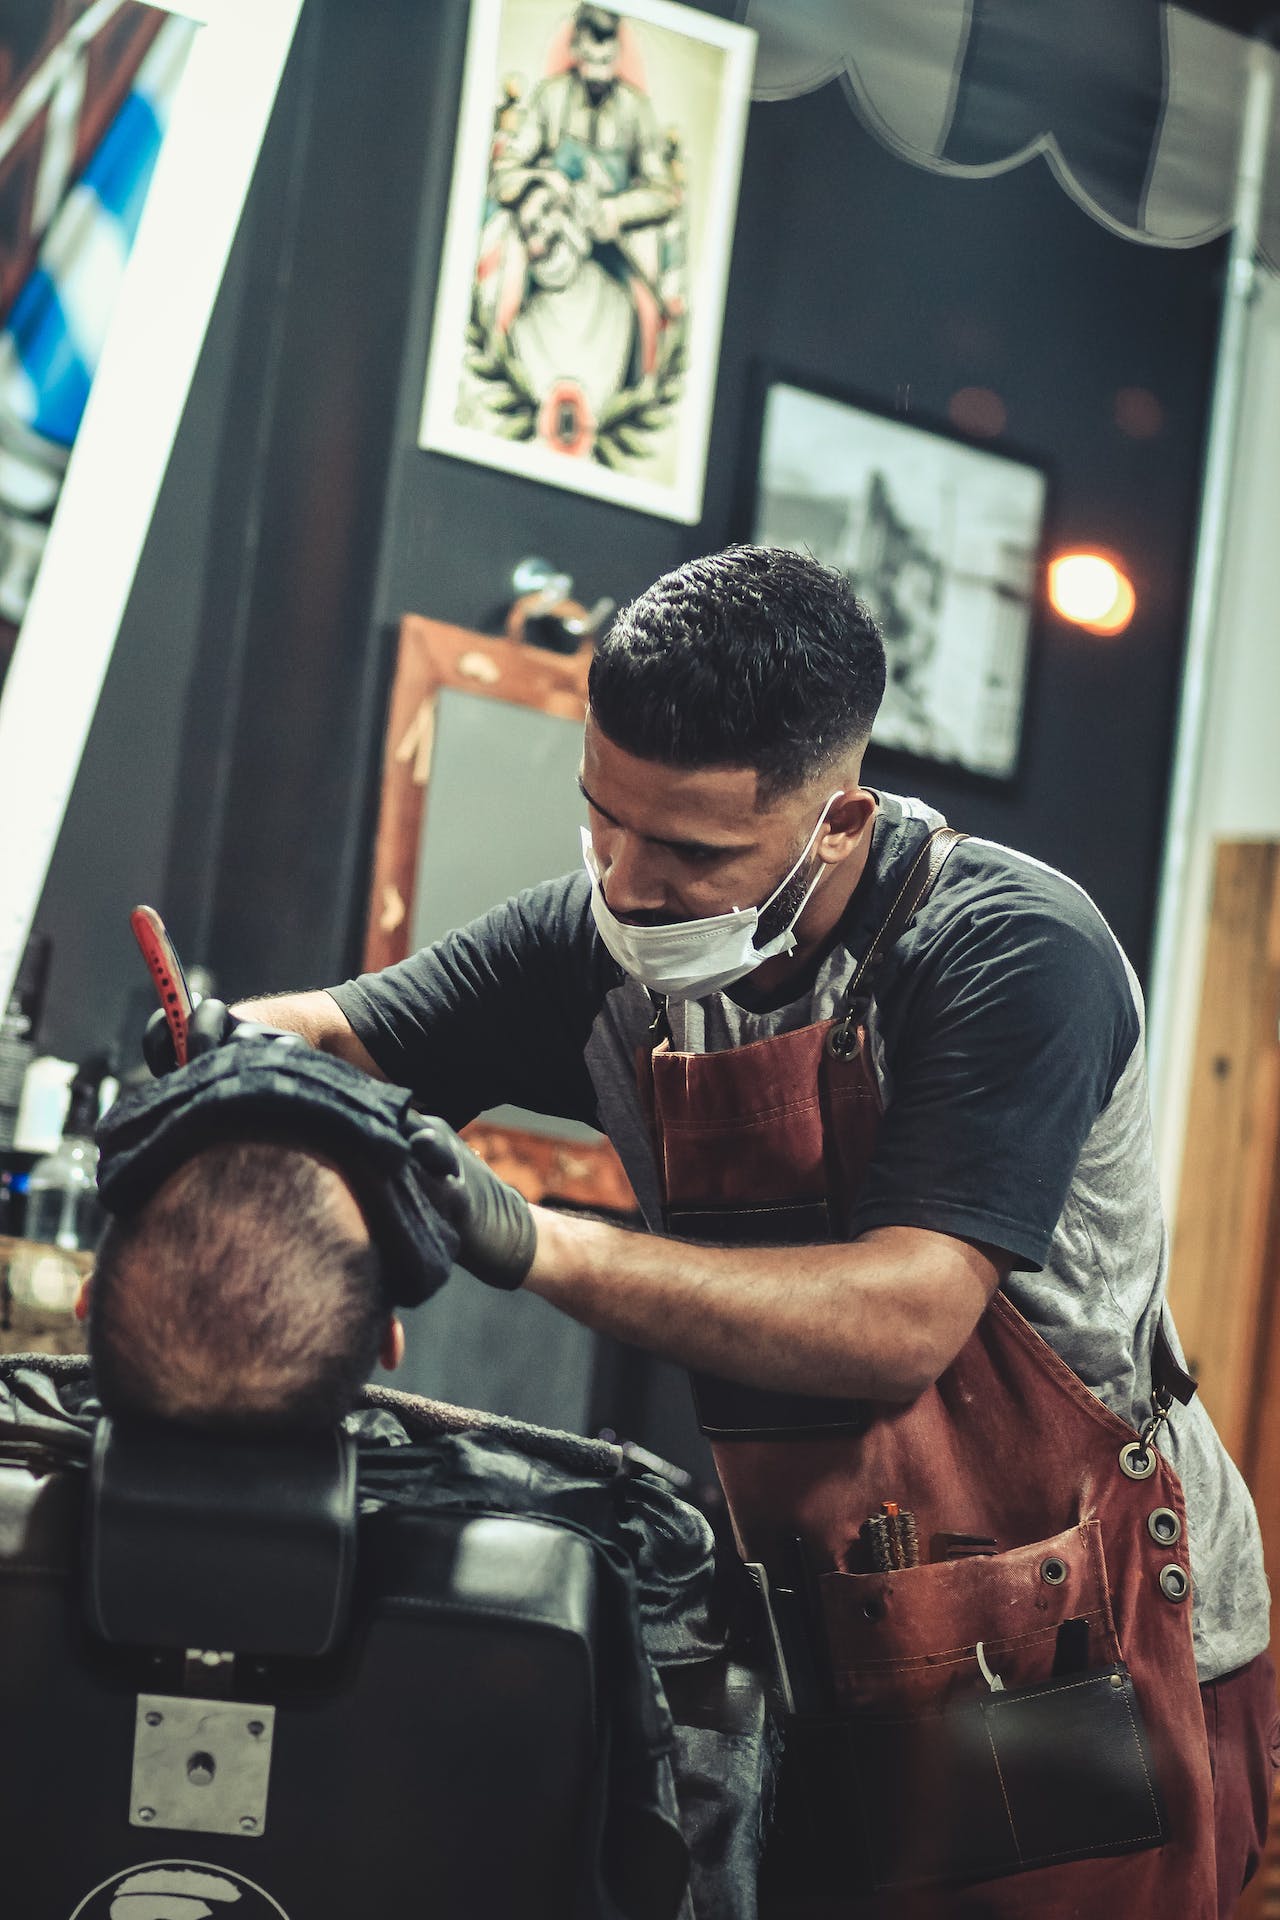 A man getting his hair cut in a barber shop.